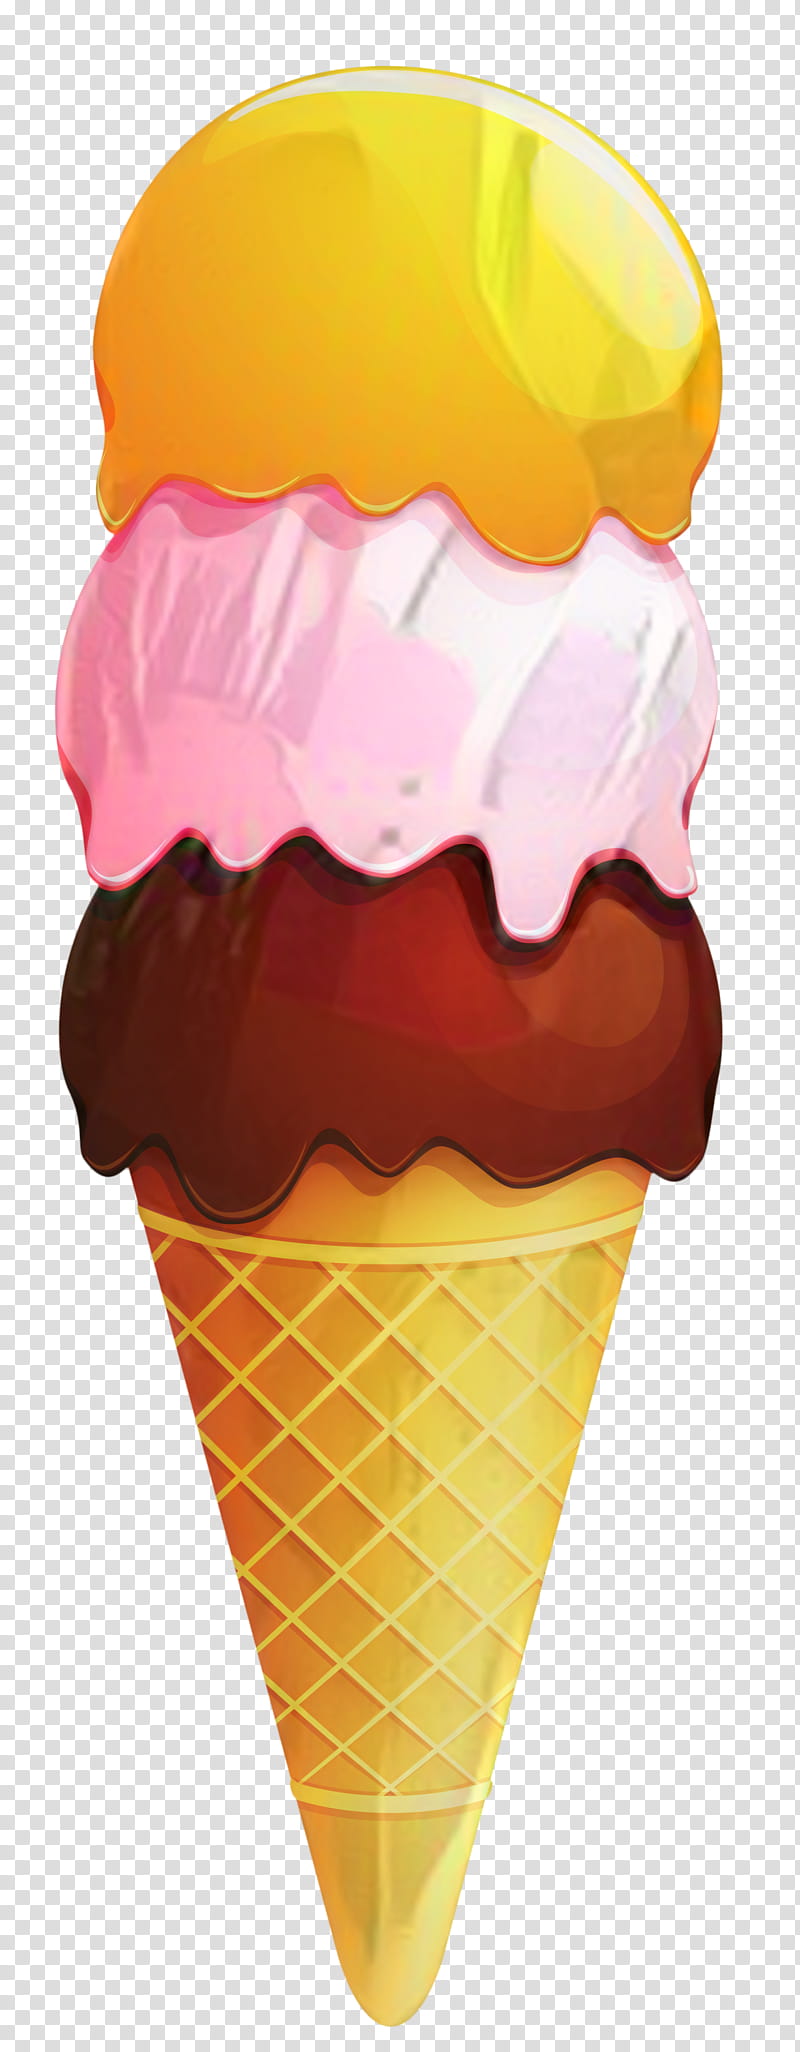 Ice Cream Cone, Ice Cream Cones, Neapolitan Ice Cream, Italian Ice, Sundae, Vanilla Ice Cream, Sprinkles, Food Scoops transparent background PNG clipart